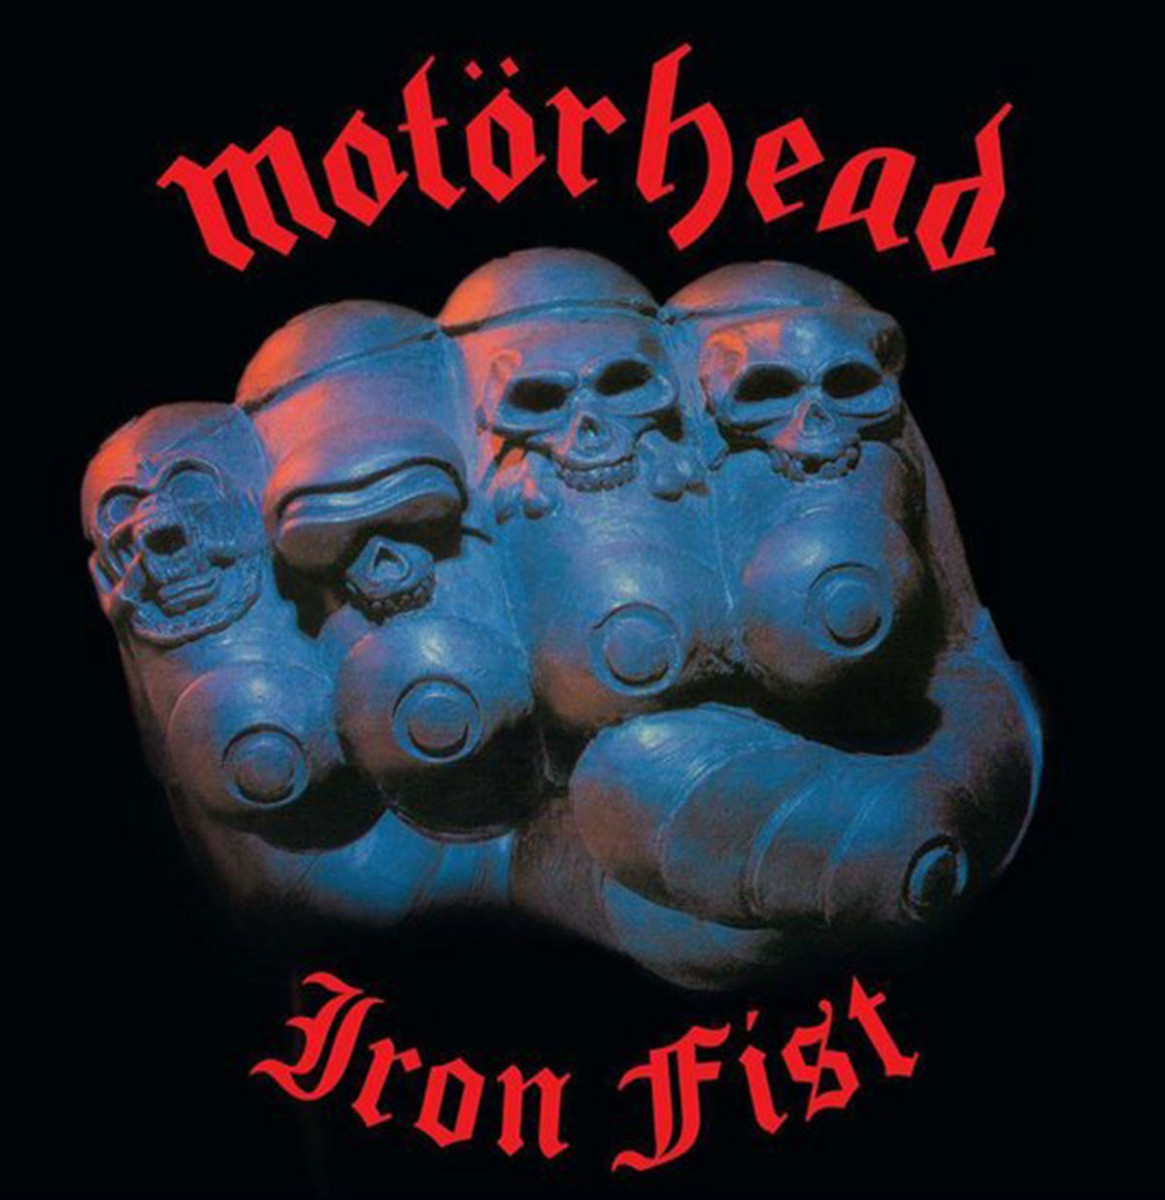 Motörhead - Iron Fist (Gekleurd Vinyl) LP